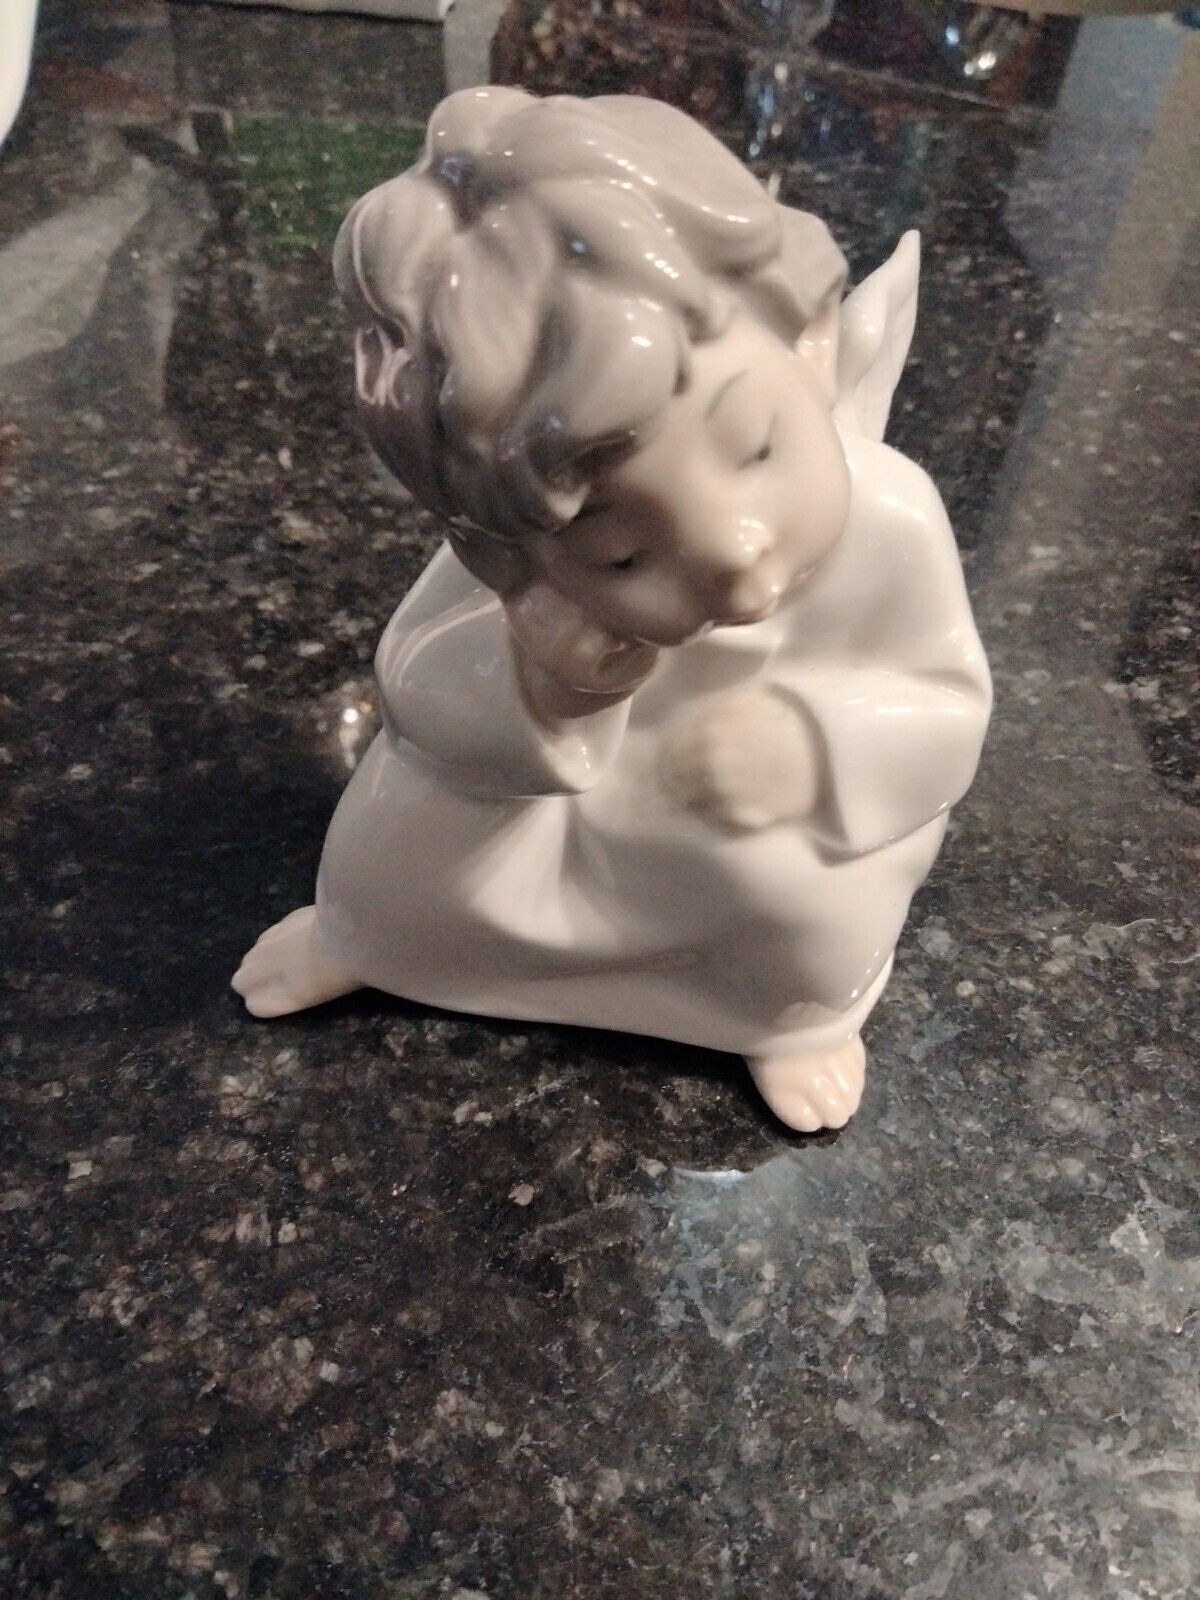 Vintage Lladro porcelain angel figurine 4” tall